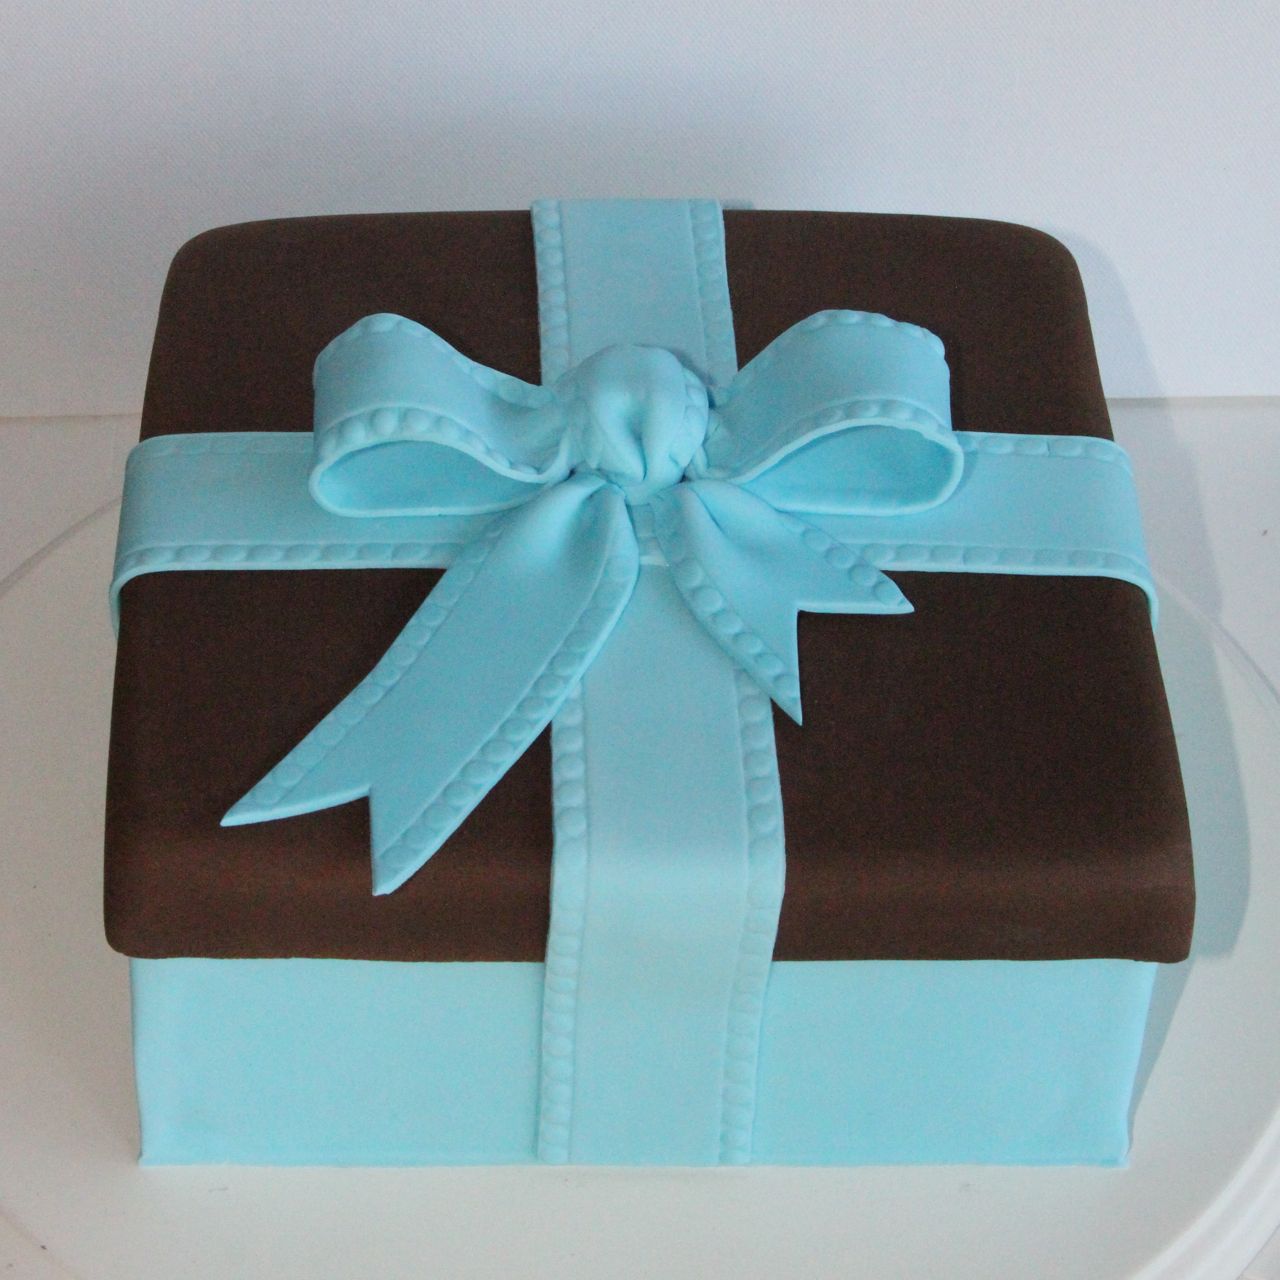 Coco Jo Cake Design Gift box cake